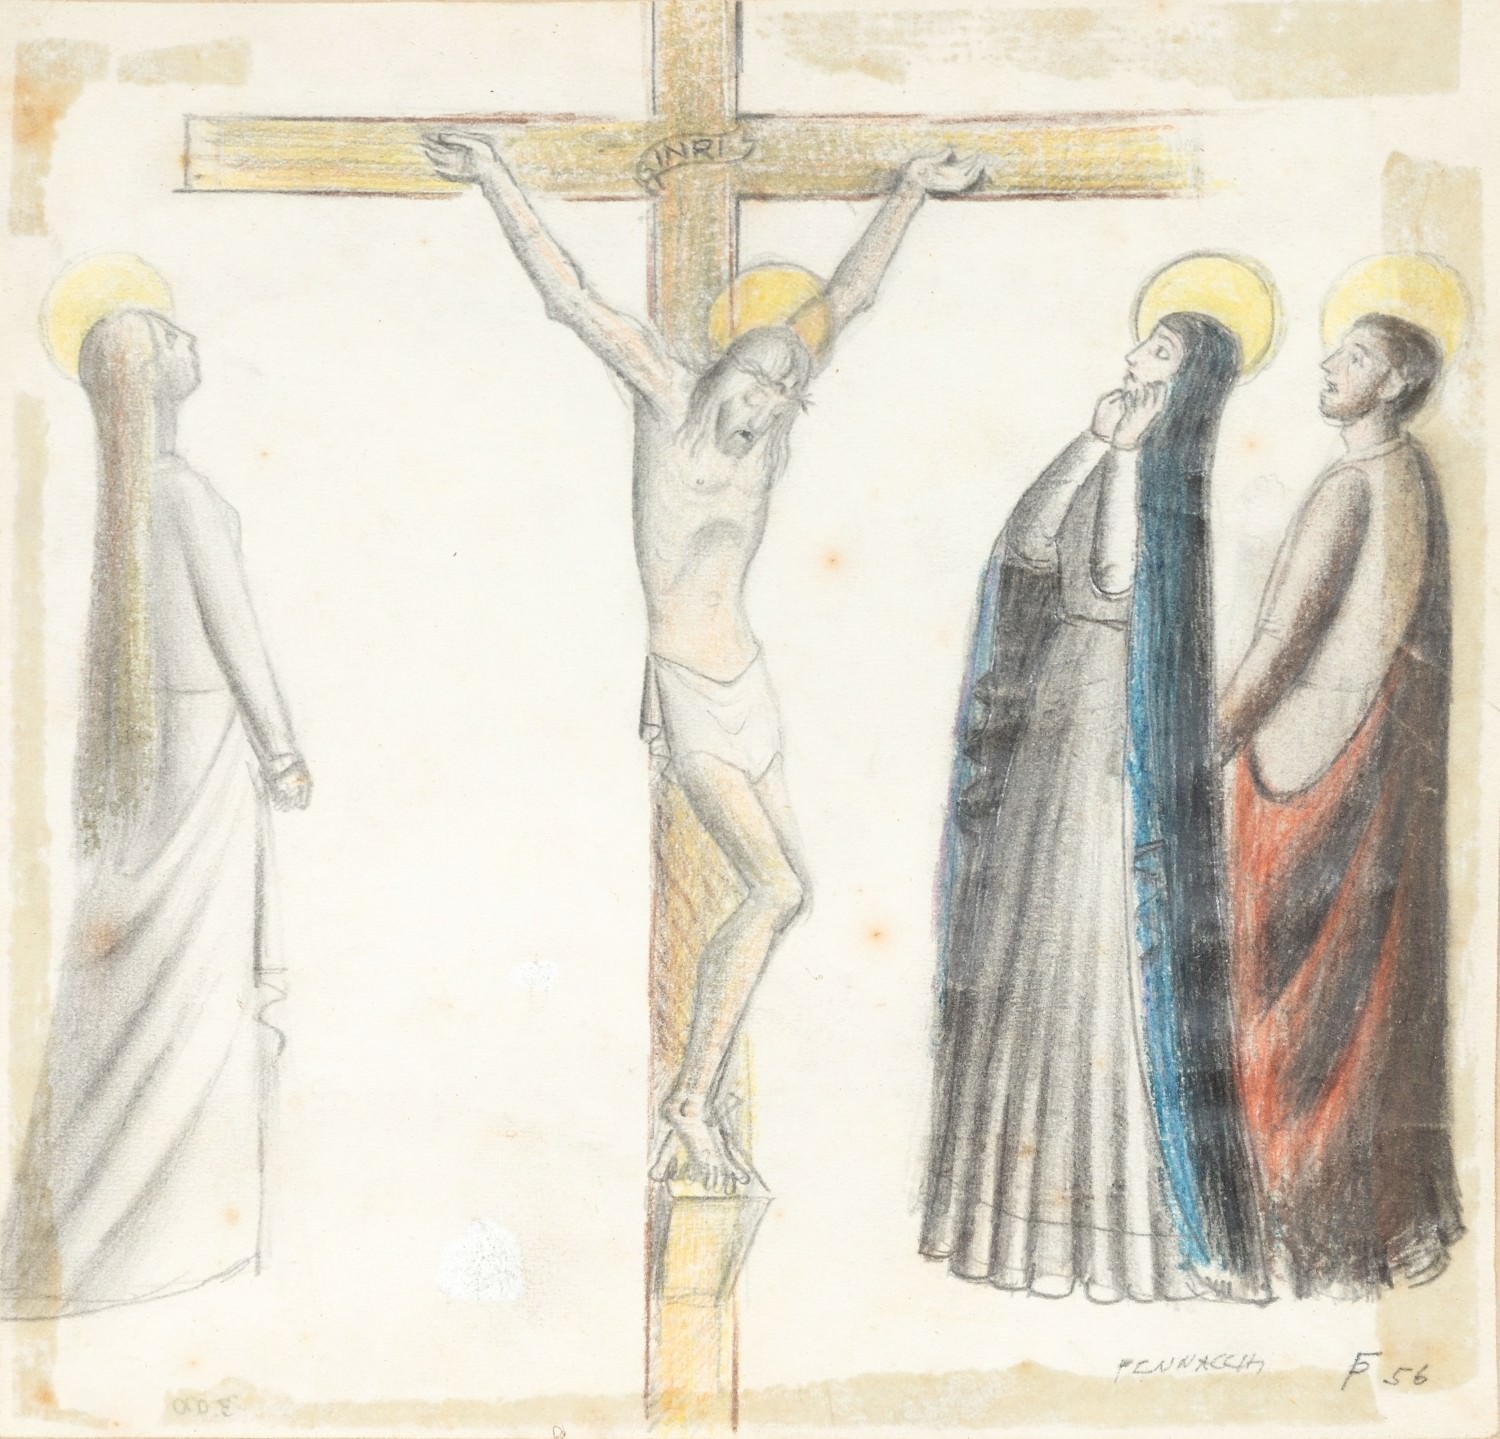 Crucificação by Fulvio Pennacchi, 1956